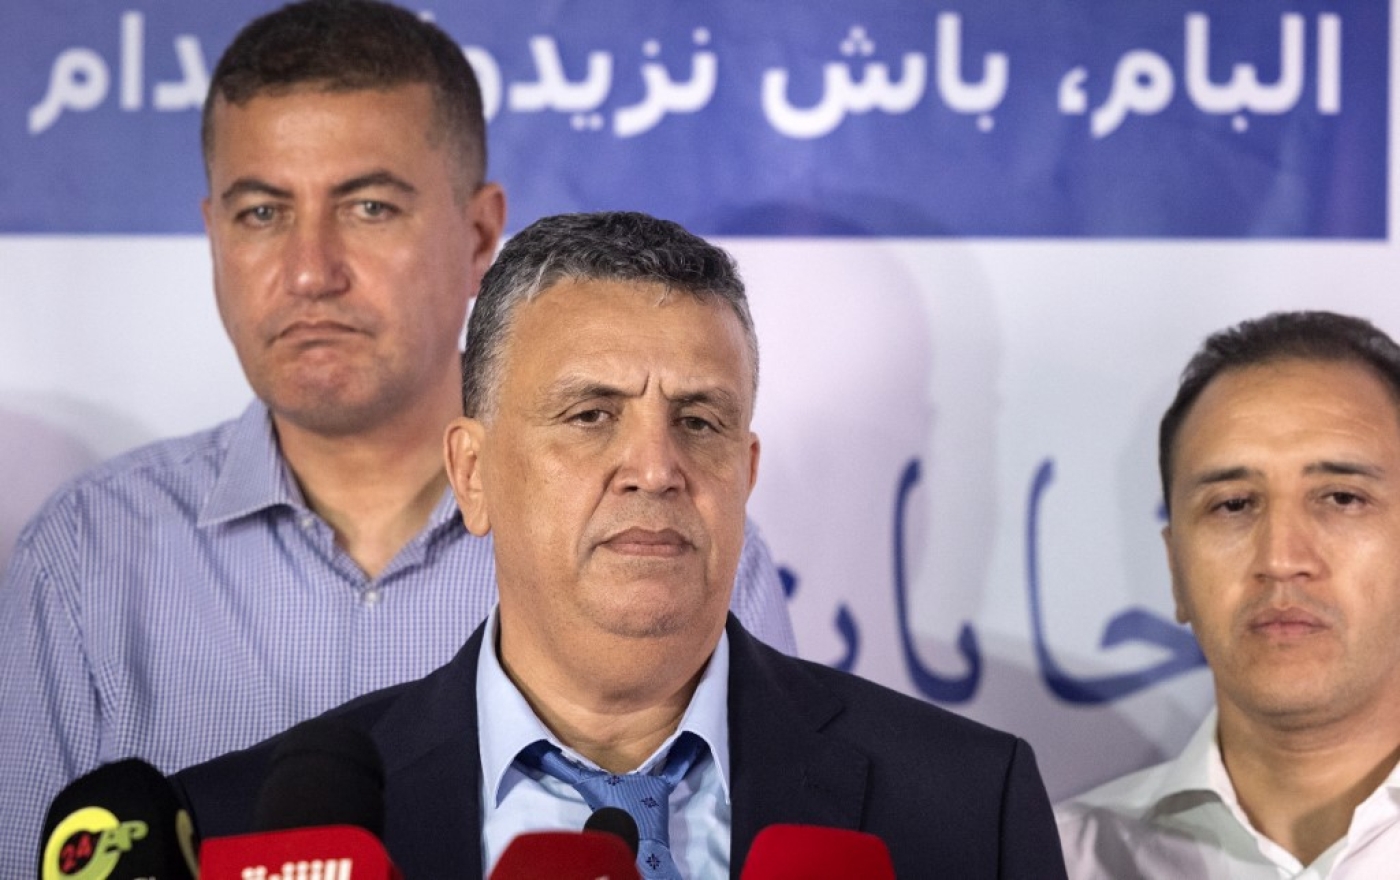 Abdellatif Ouahbi et des membres du Parti authenticité et modernité (PAM) après les élections locales et législatives, le 9 septembre 2021 à Rabat (AFP/Fadel Senna)